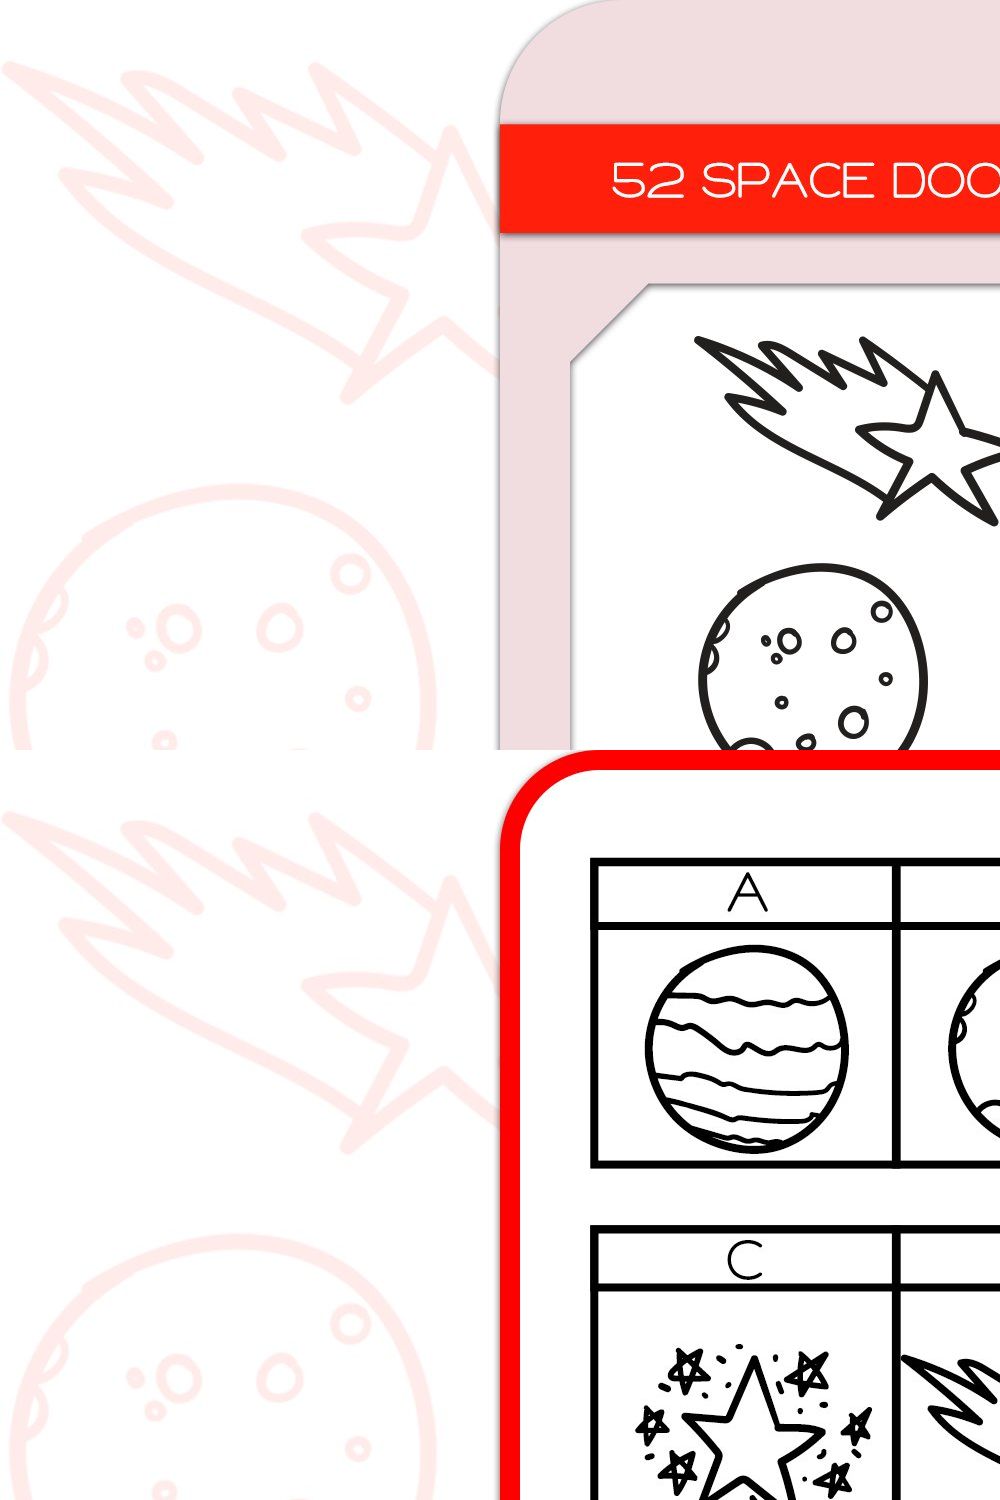 Space Doodles - Dingbats Font pinterest preview image.